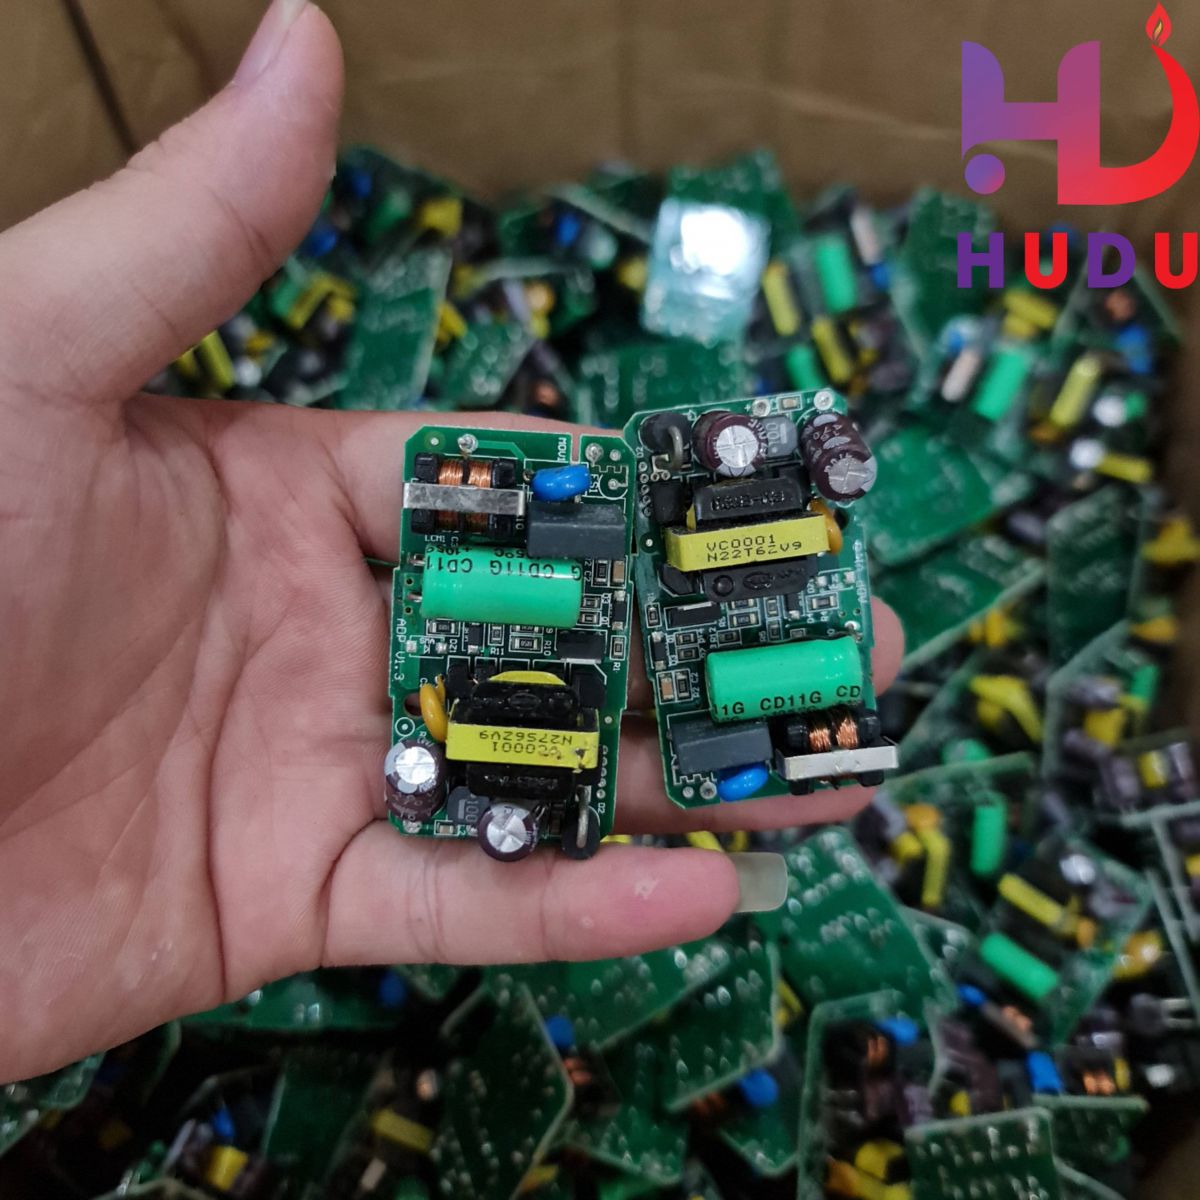 Linh kiện Hudu cung cấp nguồn không vỏ 12V – 1.25A đảm bảo chất lượng tốt